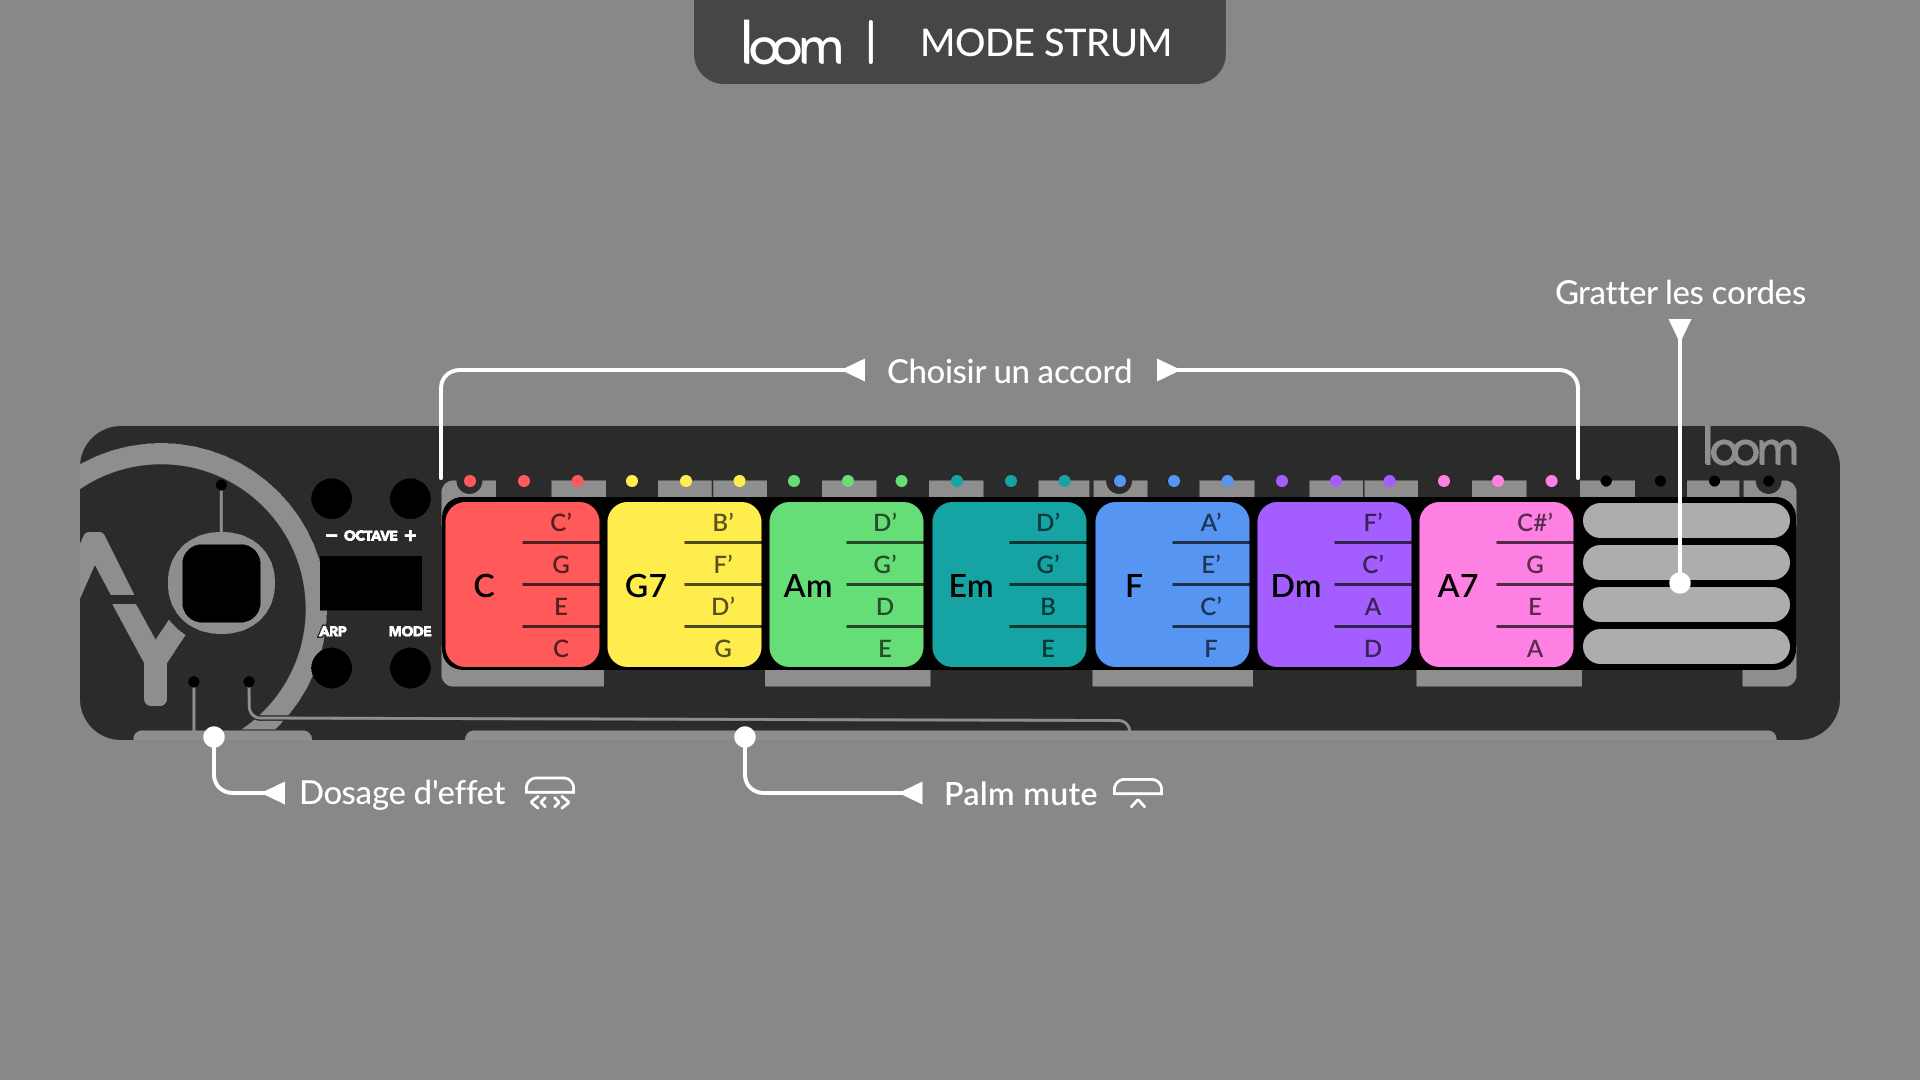 Mode strum, comme une guitare, avec la configuration par défaut : sur la surface, sélectionnez l'un des accords avec une main, grattez les cordes avec l'autre, étouffez avec la paume sur la barre, ajustez l'effet avec le slider.